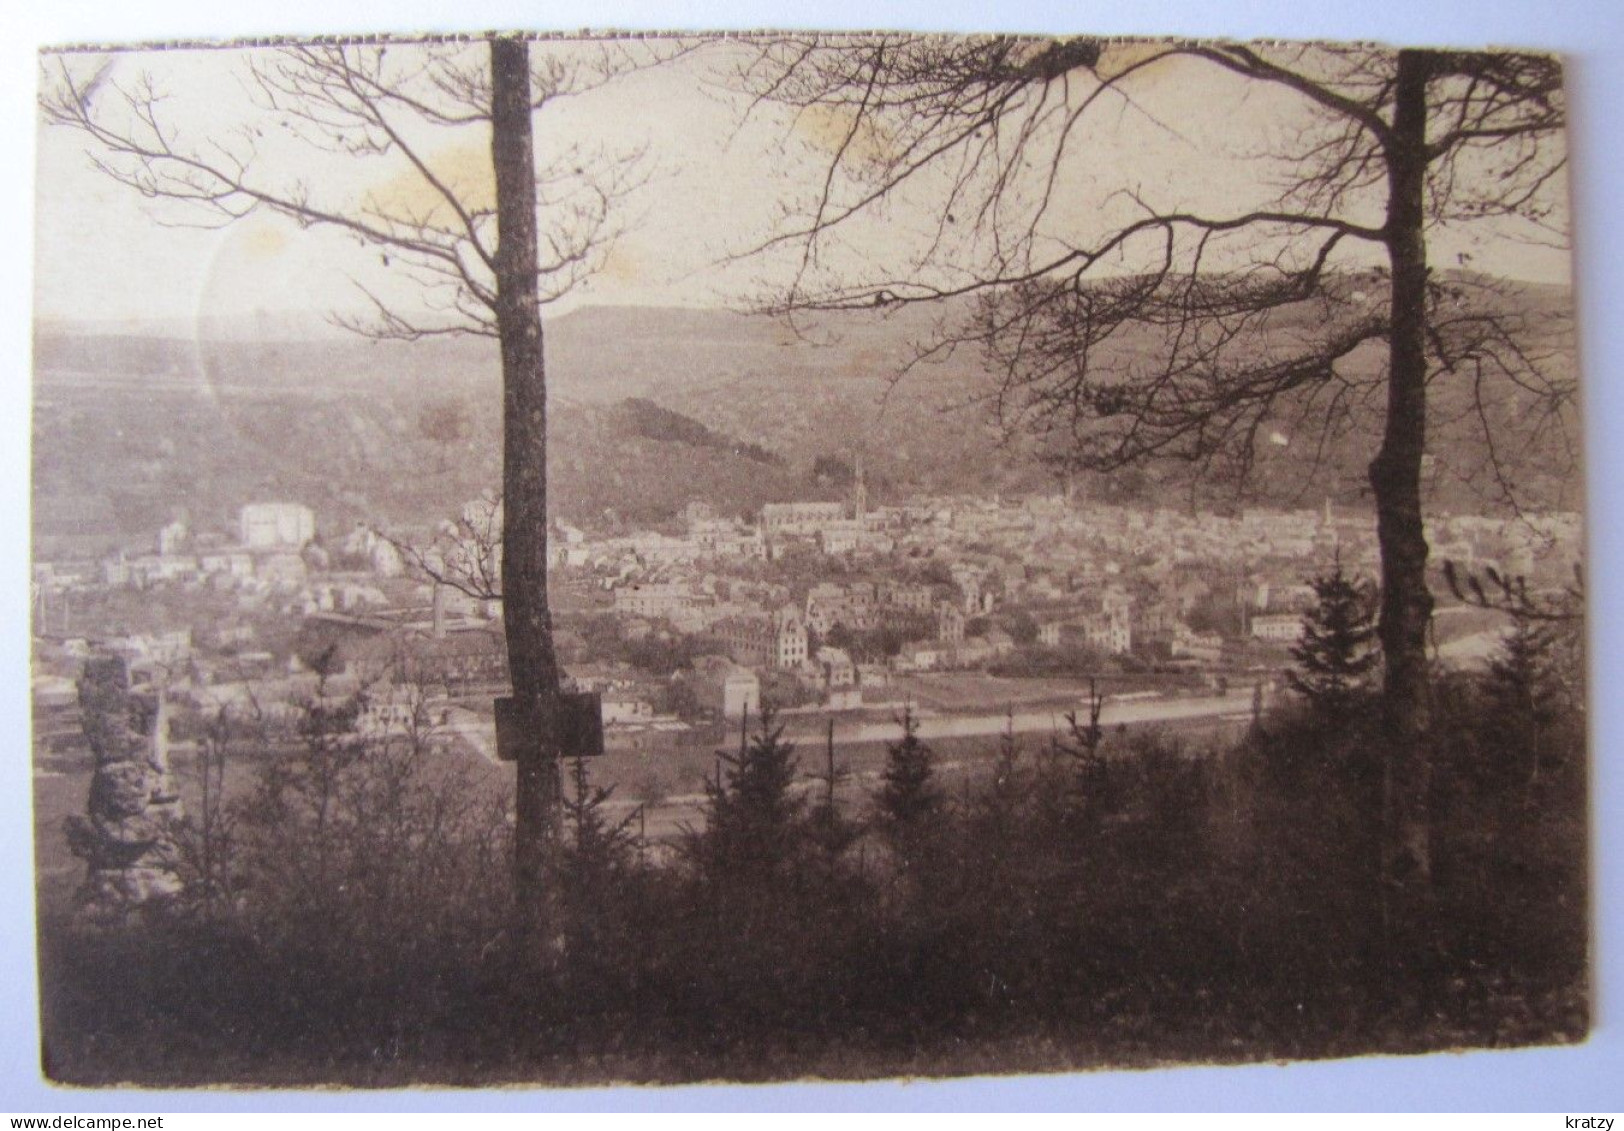 LUXEMBOURG - DIEKIRCH - Deiwelselter - 1931 - Diekirch